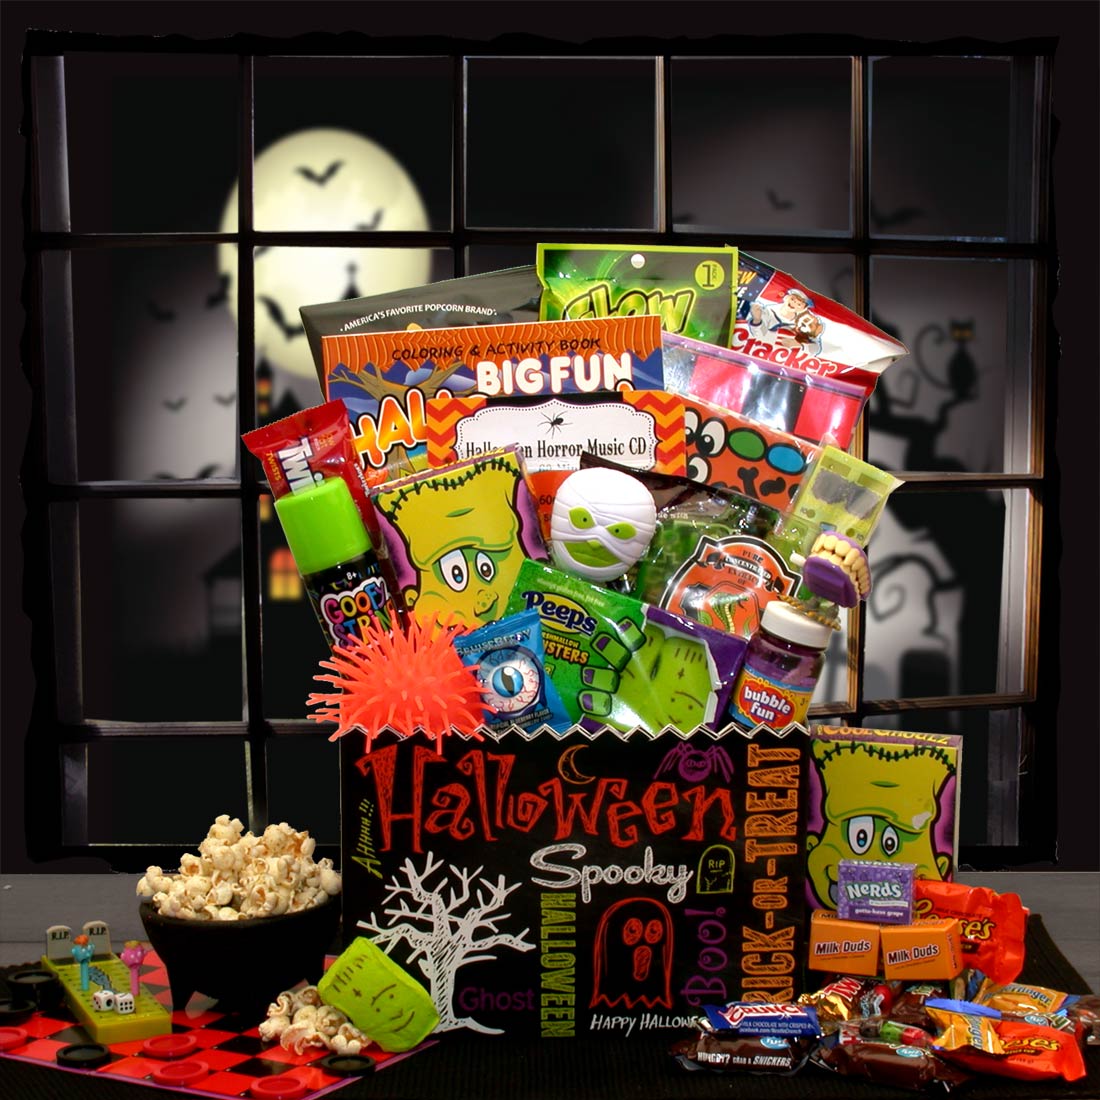 Halloween Fun & Games Gift Box